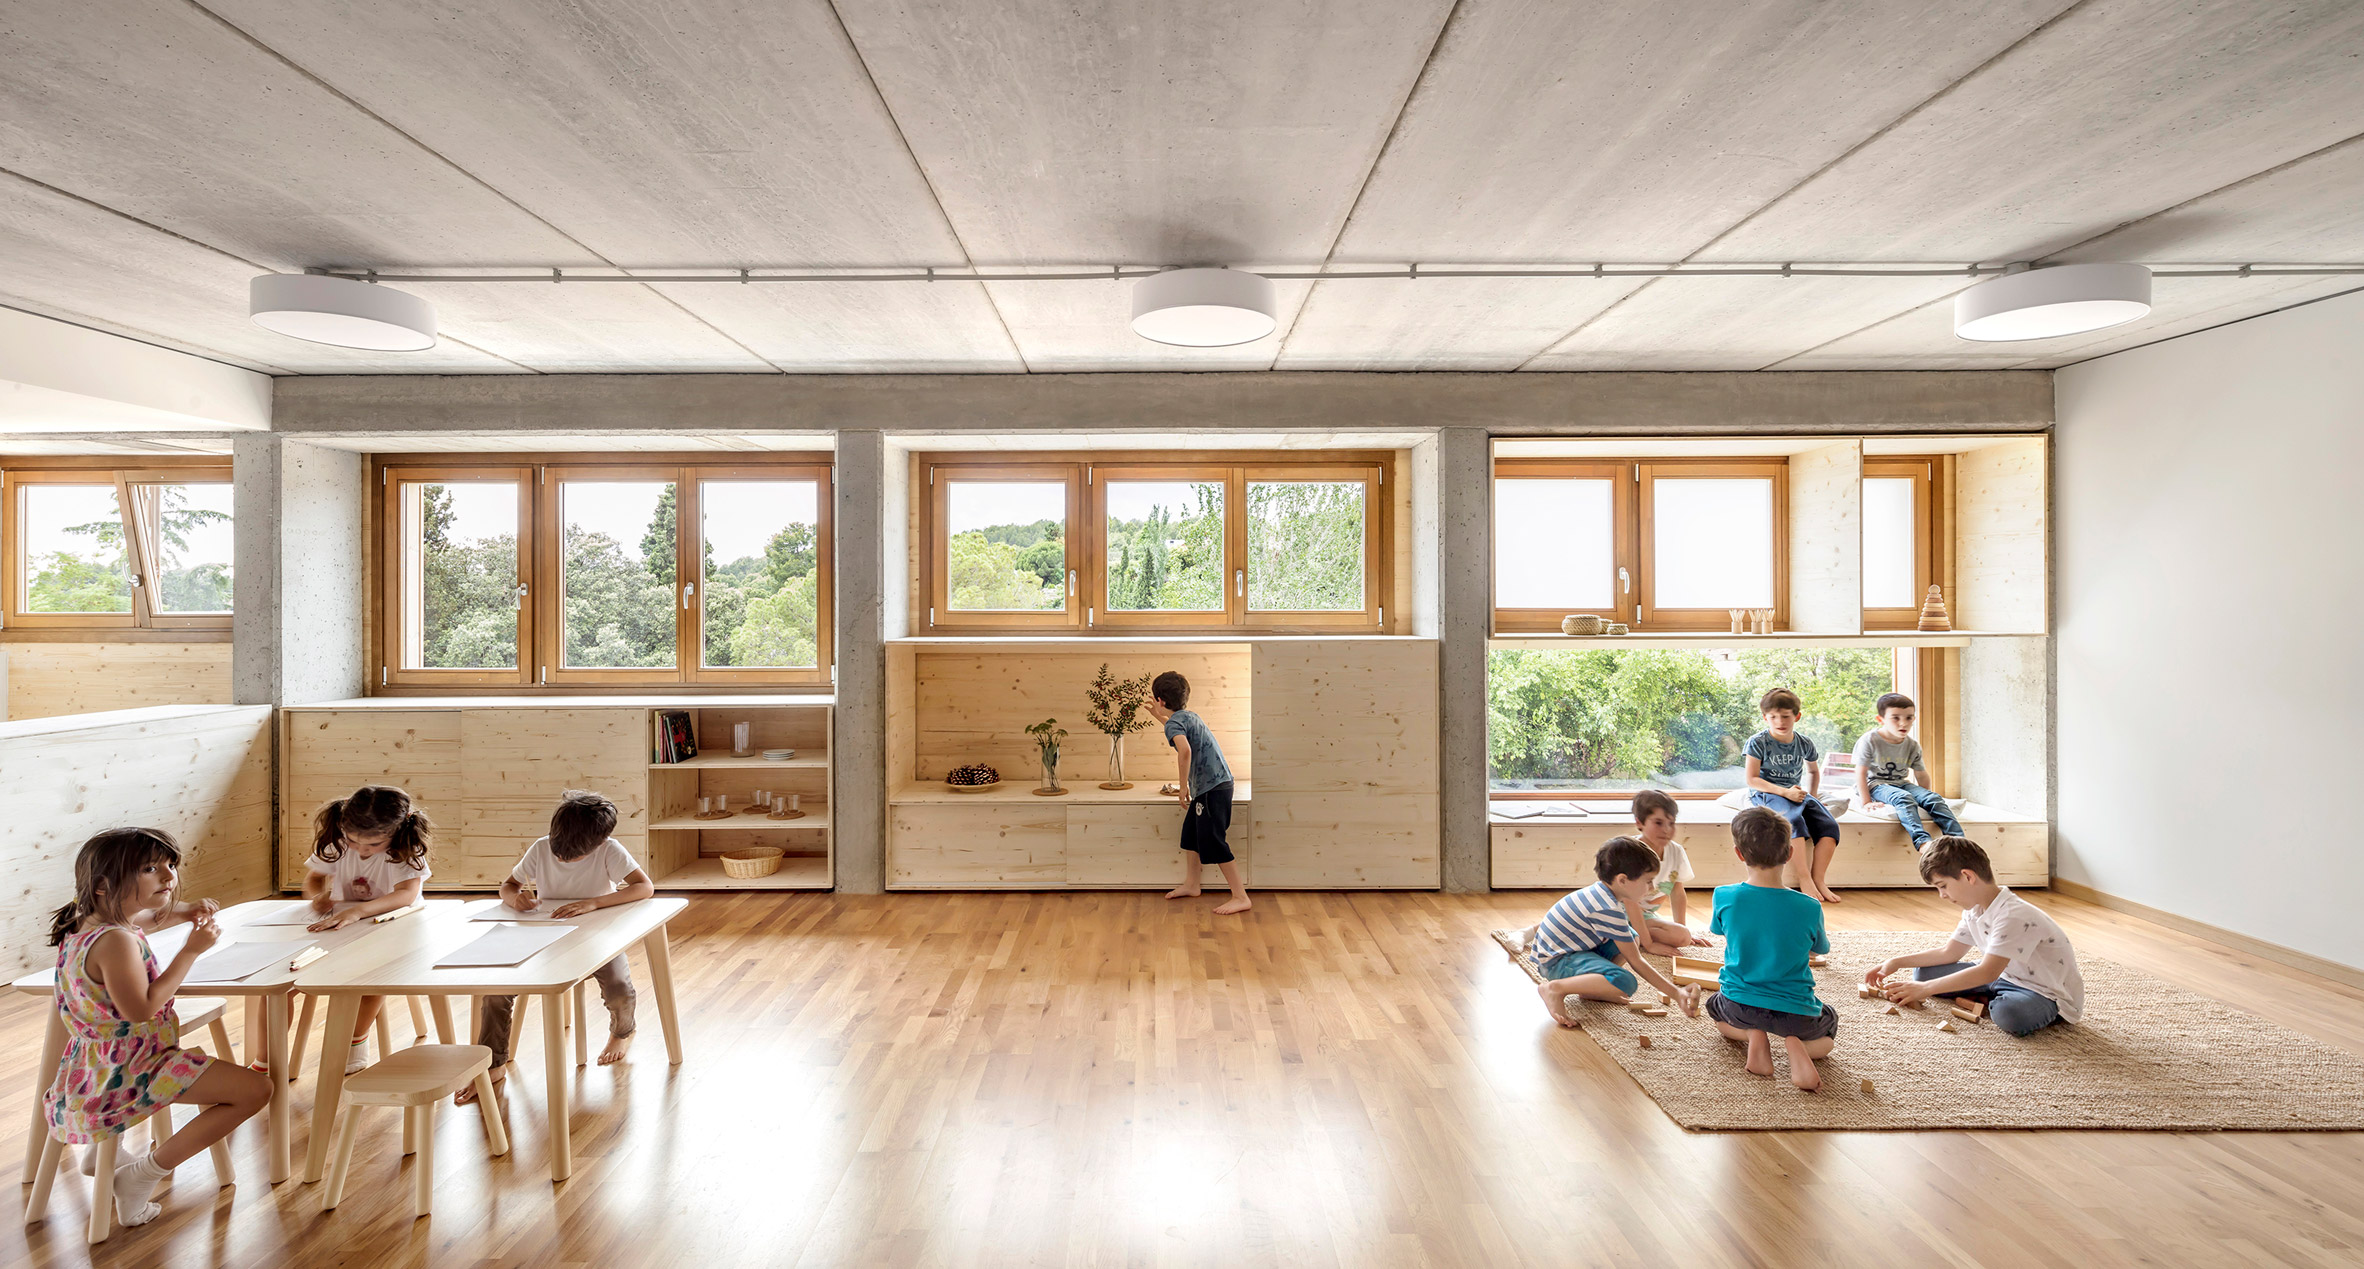 El Til-ler Kindergarten School by Eduard Balcells, Ignasi Rius and Daniel Tigges